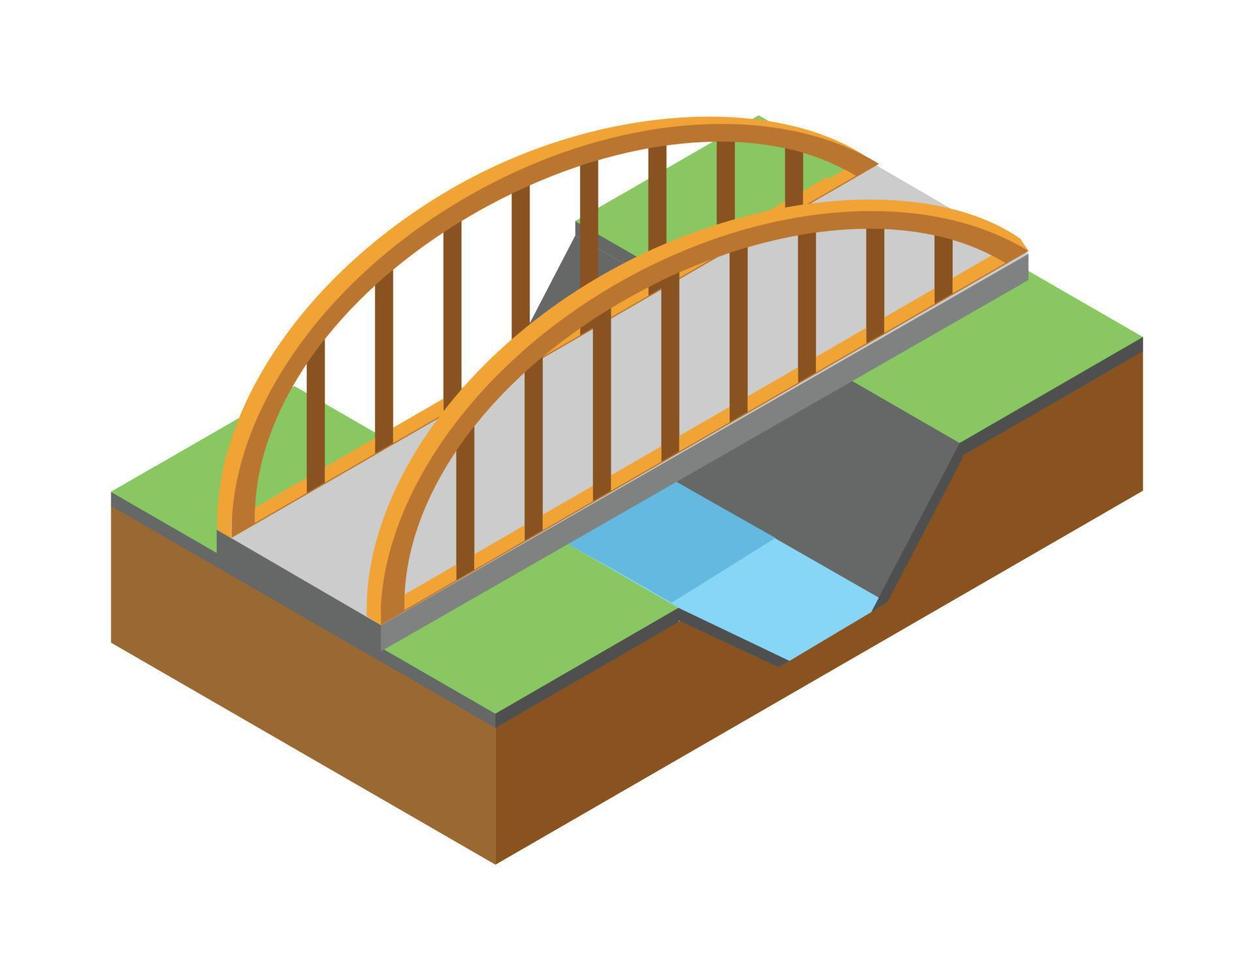 Die Brücke Skyway der städtischen Infrastruktur ist isometrisch für Spiele, Anwendungen der Inspiration und Kreativität. geeignet für Diagramme, Infografiken und andere grafische Elemente vektor